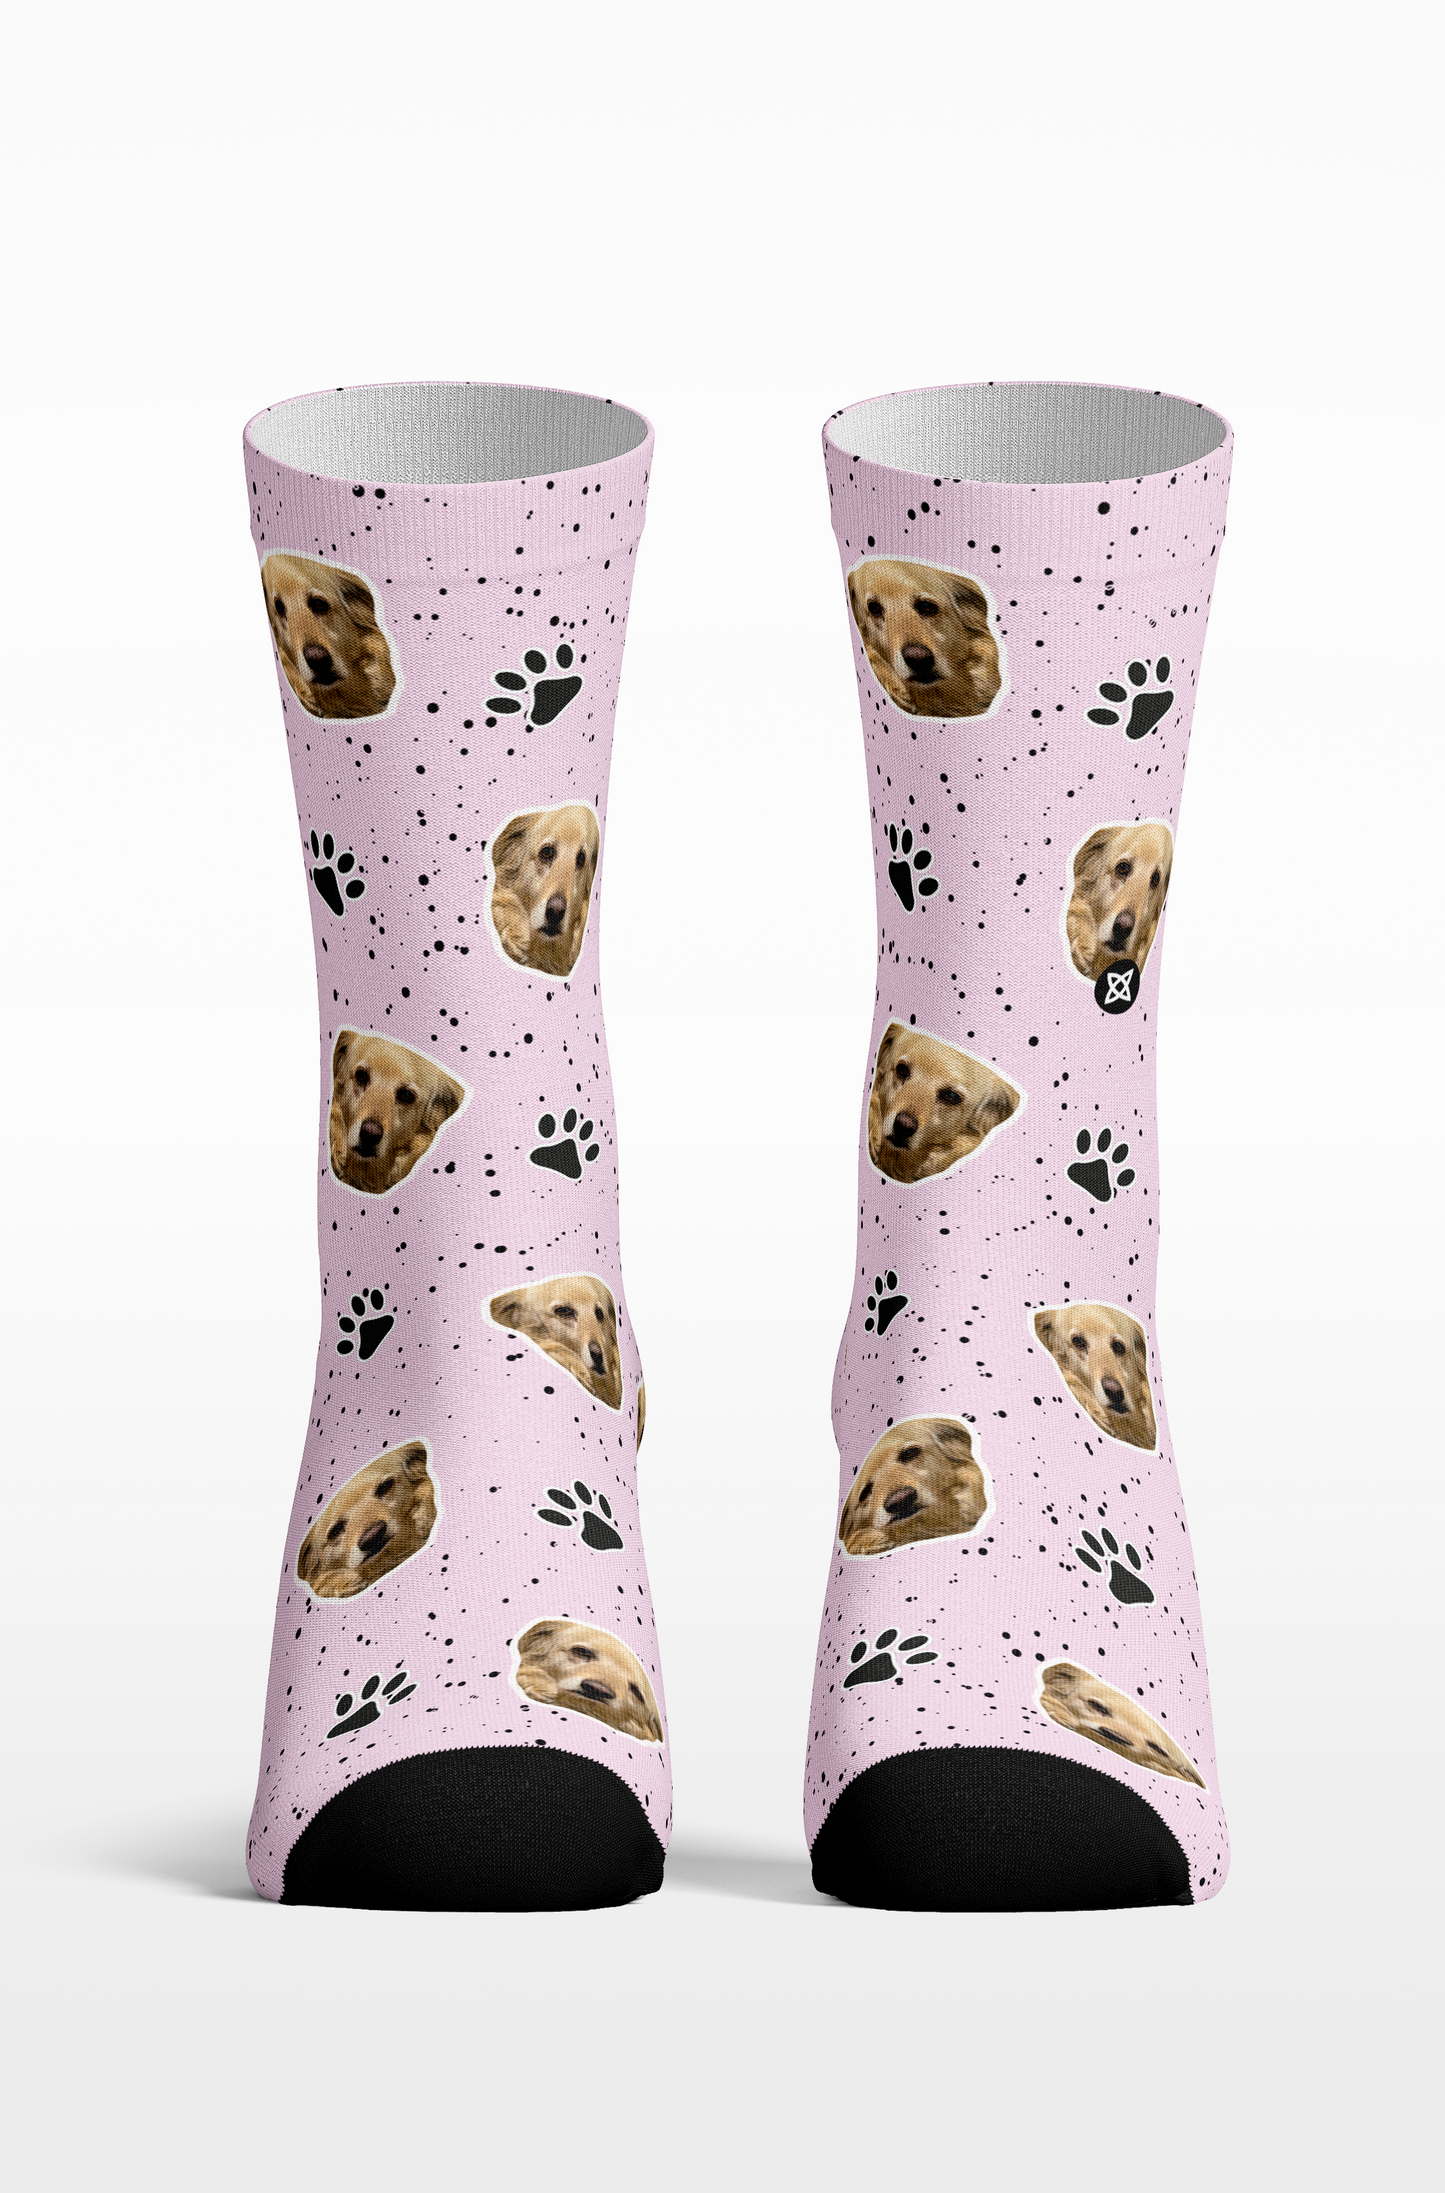 Calcetines personalizados de algodón con tu perro